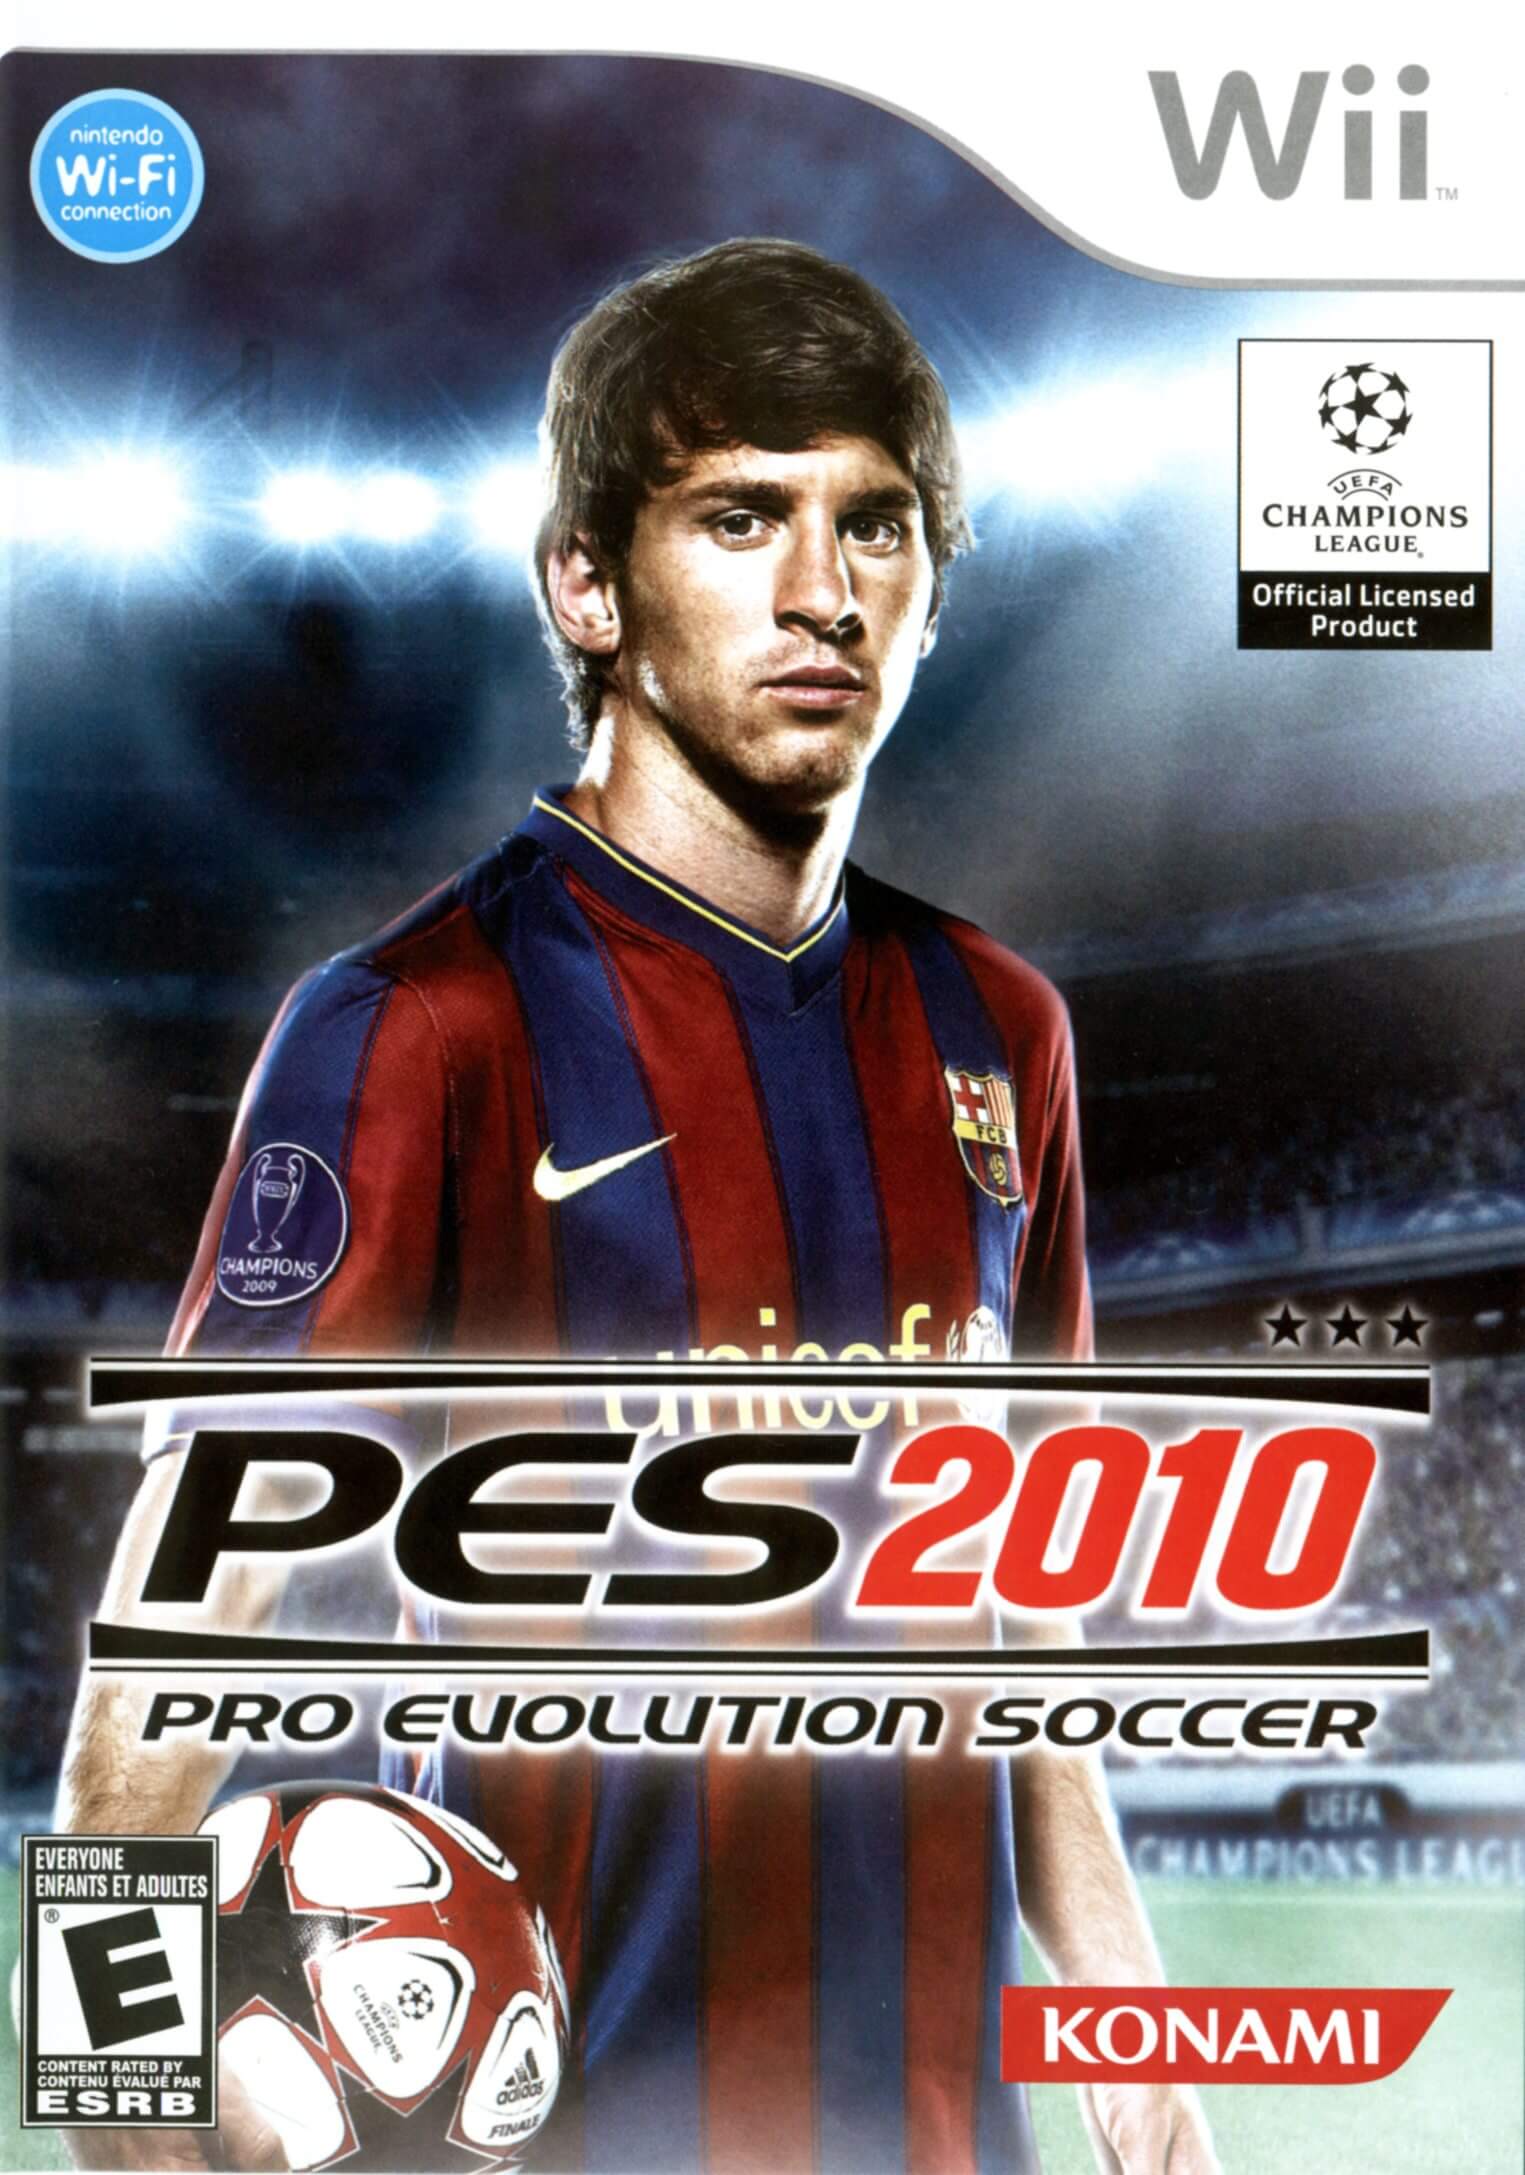 PES 2010: Pro Evolution Soccer